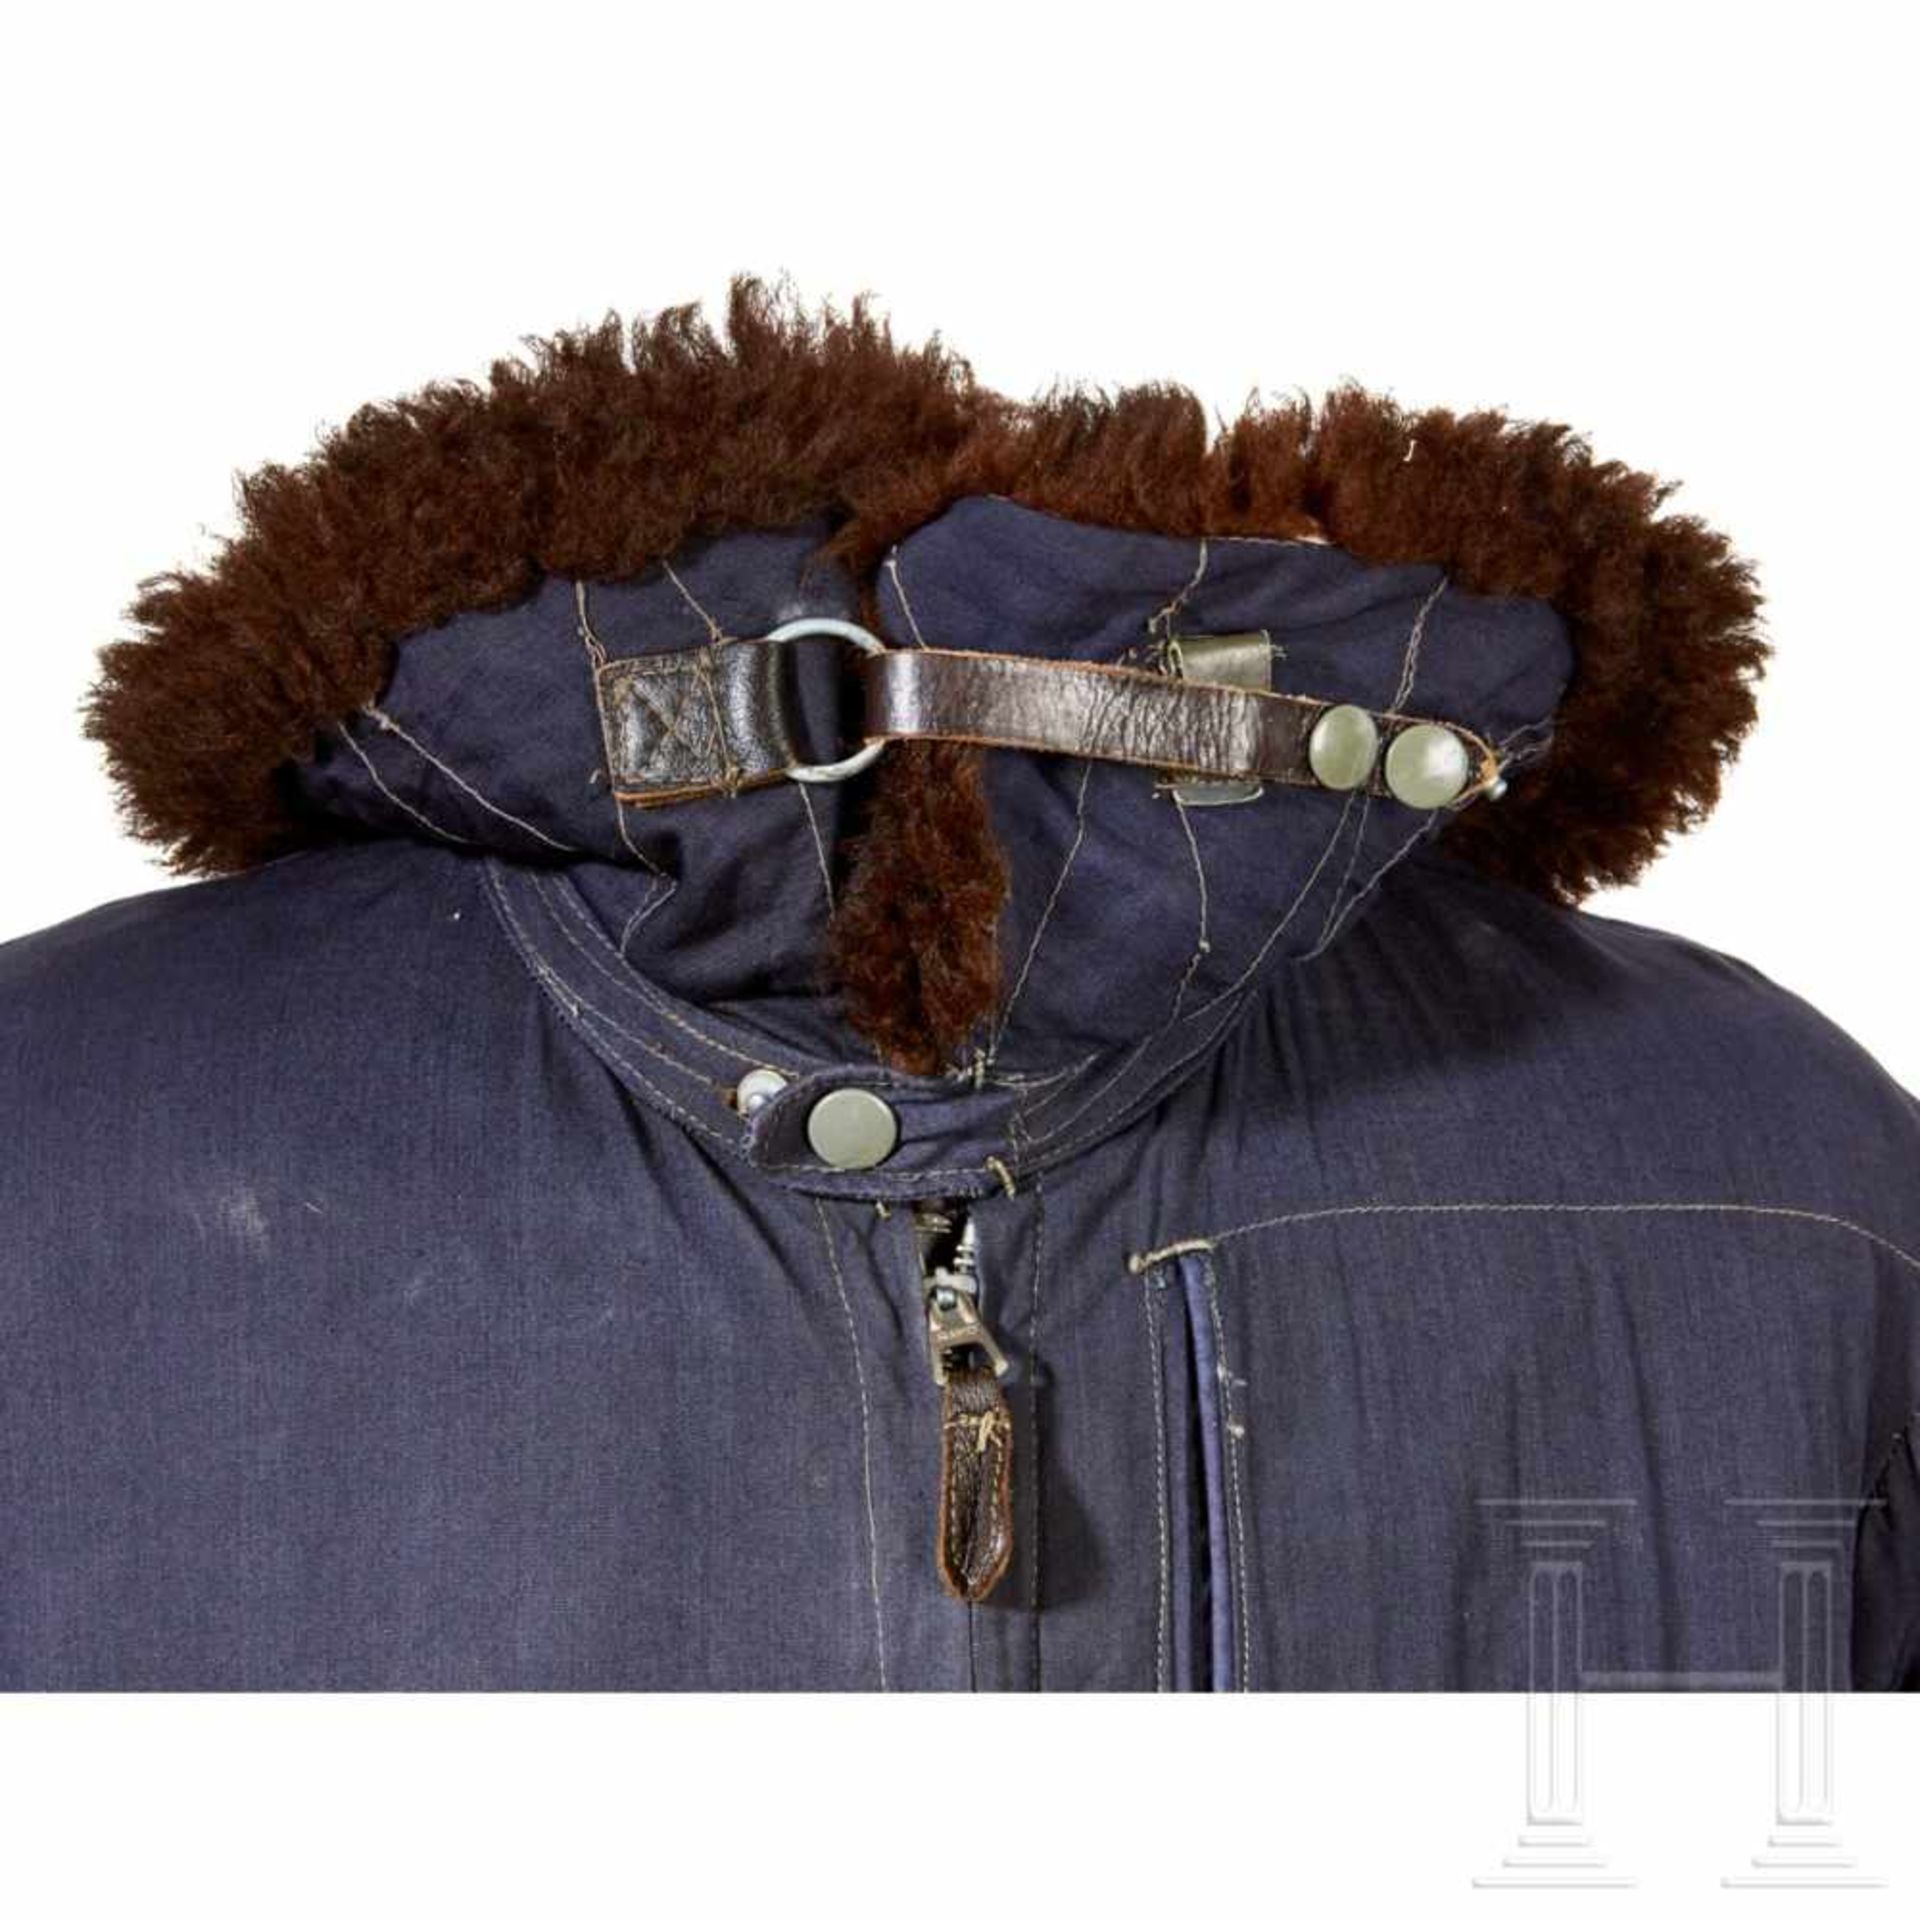 A Winter Flight JacketBlue, fur-lined winter flight jacket for aircraft crews constructed of woven - Bild 6 aus 8